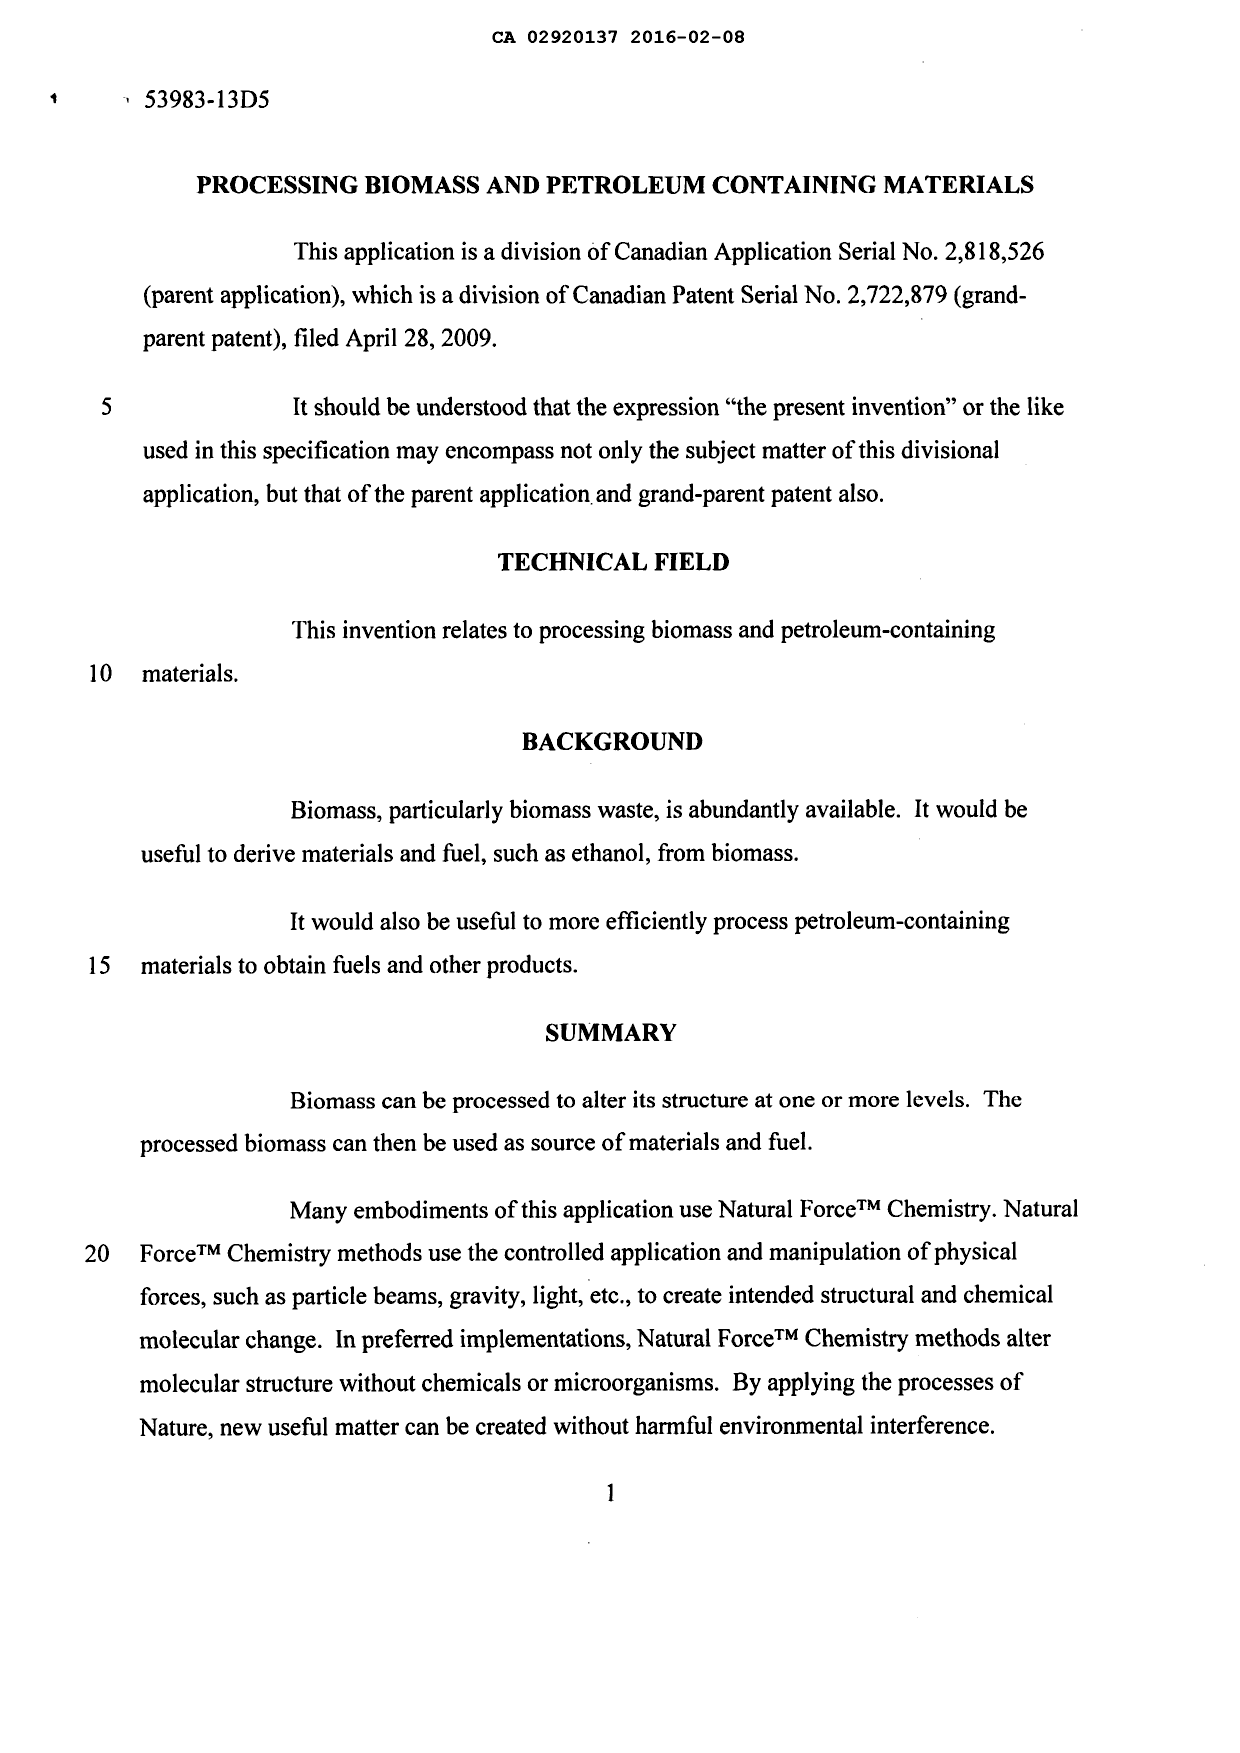 Document de brevet canadien 2920137. Description 20151207. Image 1 de 269